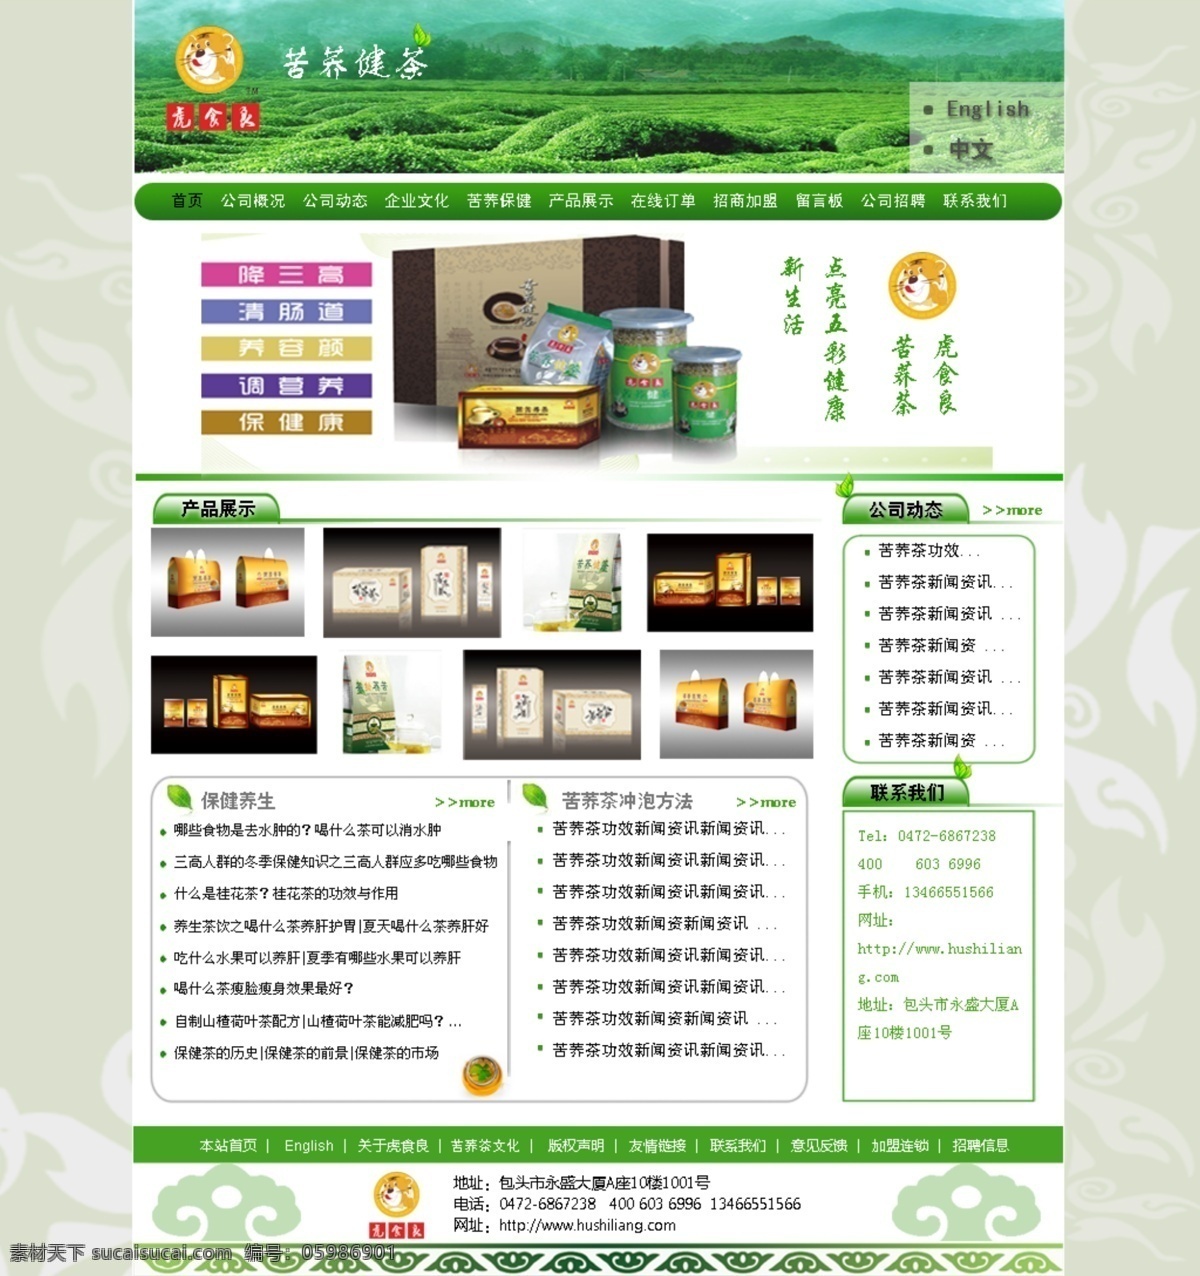 茶叶网站 茶叶 苦荞茶 绿色 清新 简洁 中文模版 网页模板 源文件 生活百科 餐饮美食